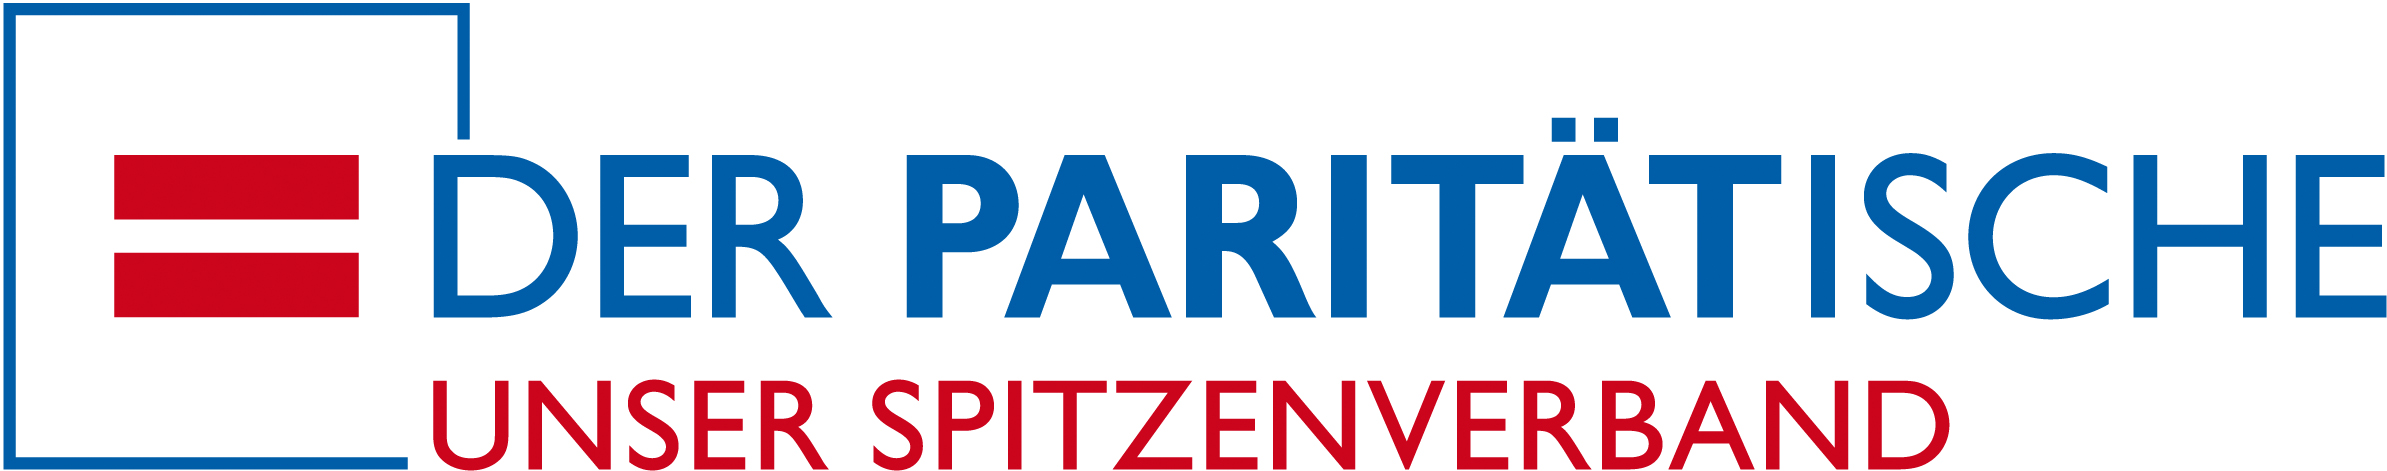 Der Paritätische - Unser Spitzenverband Logo